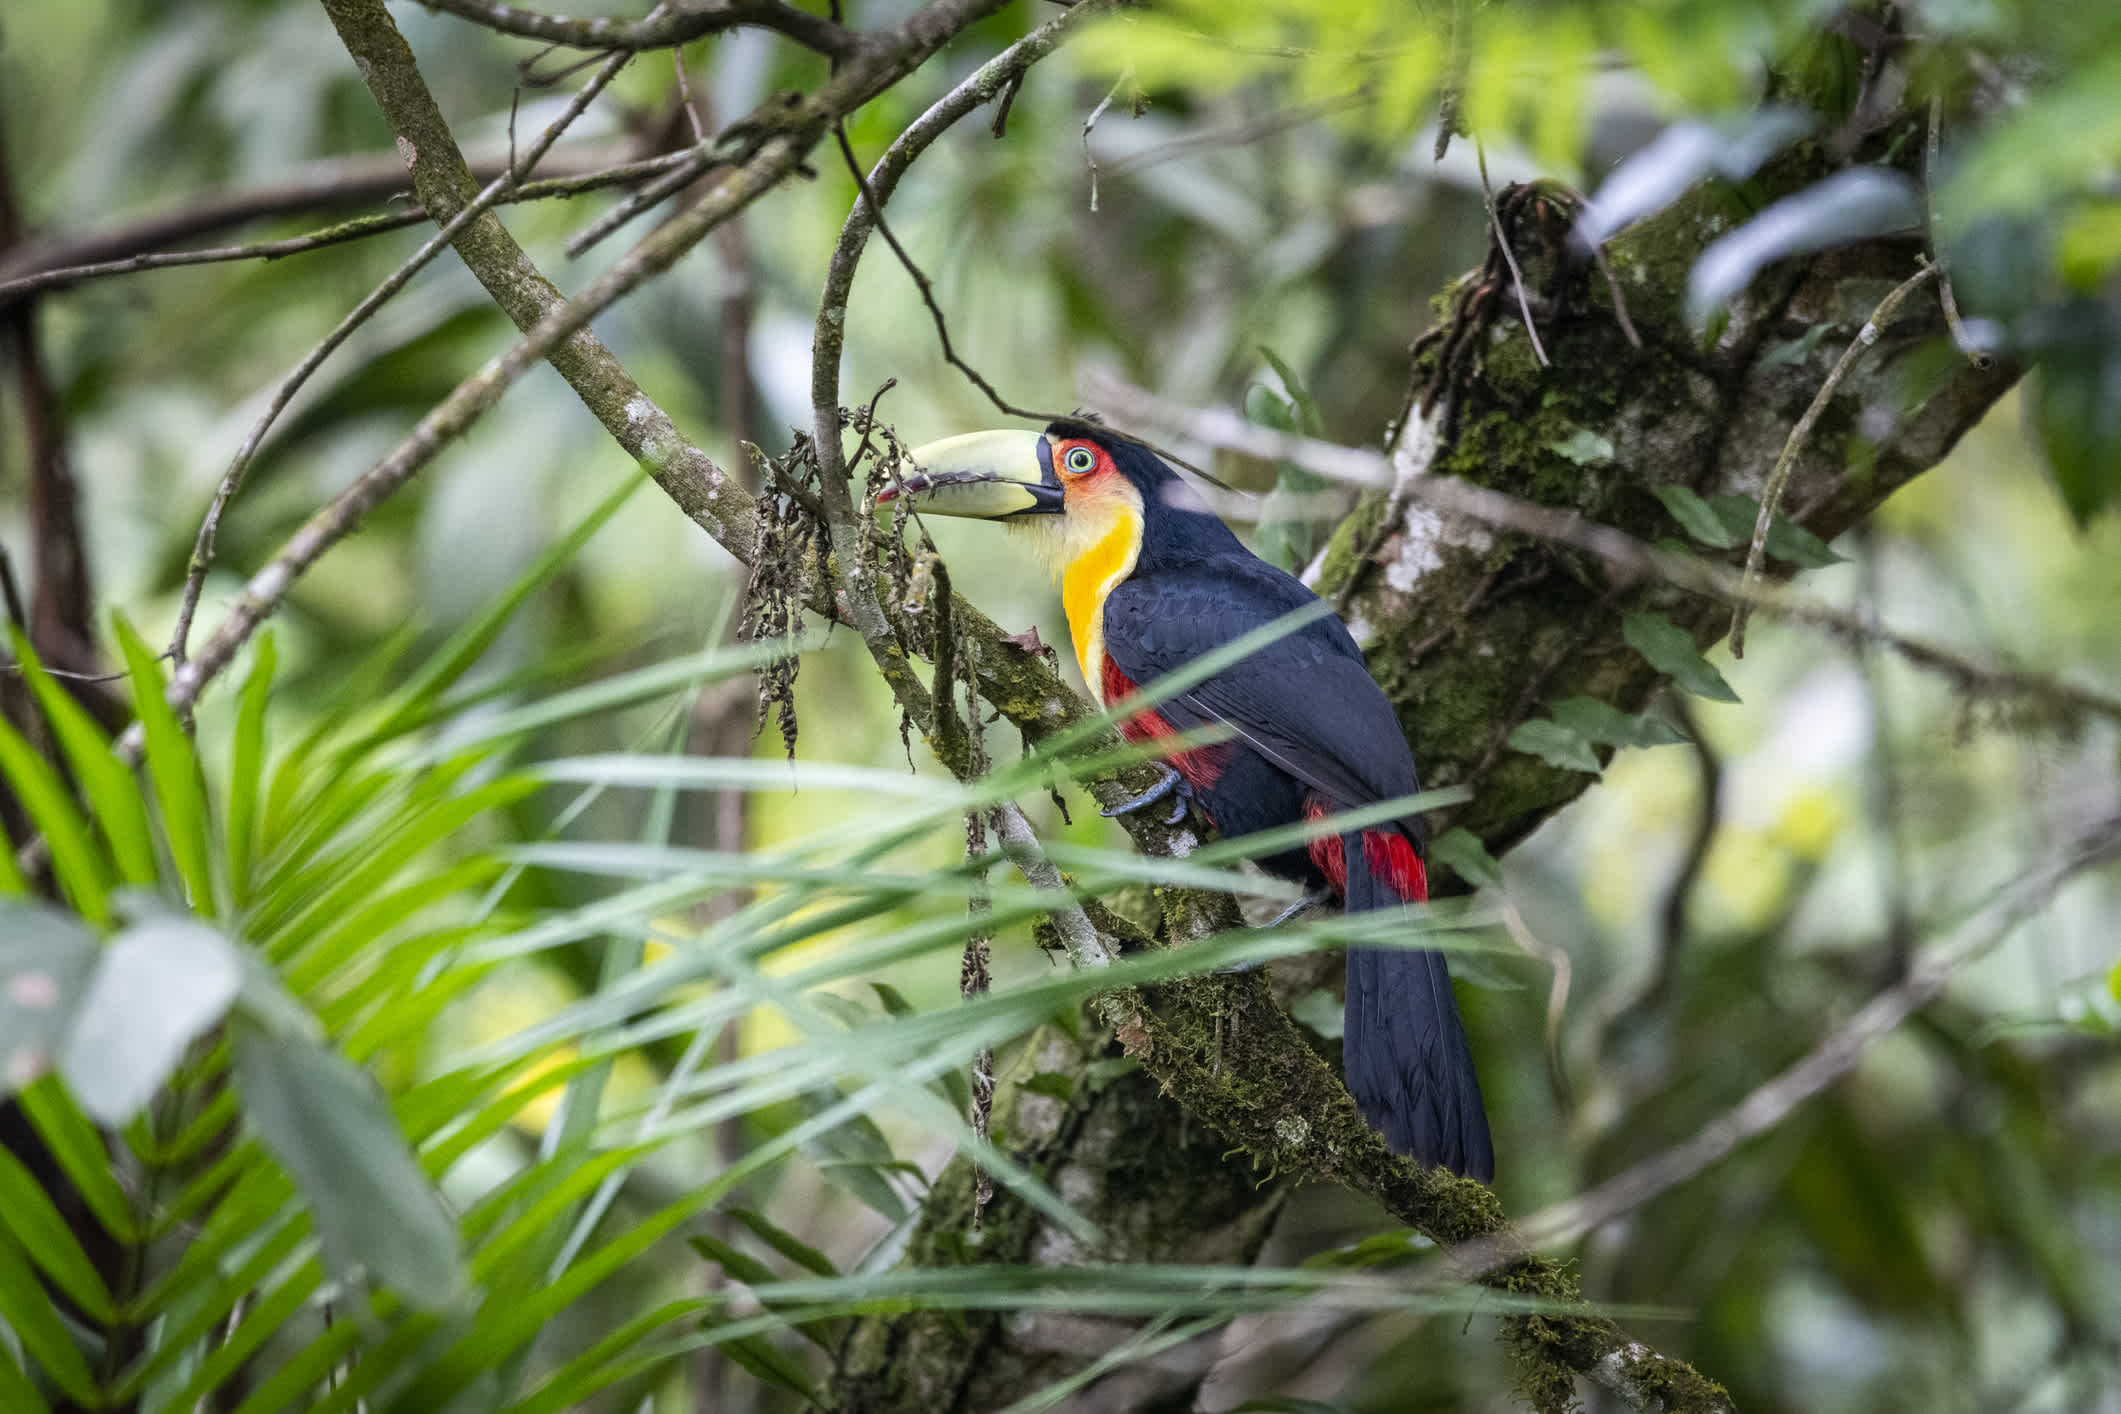 Oiseau tropical coloré à Penedo, Rio de Janeiro, Brésil.

